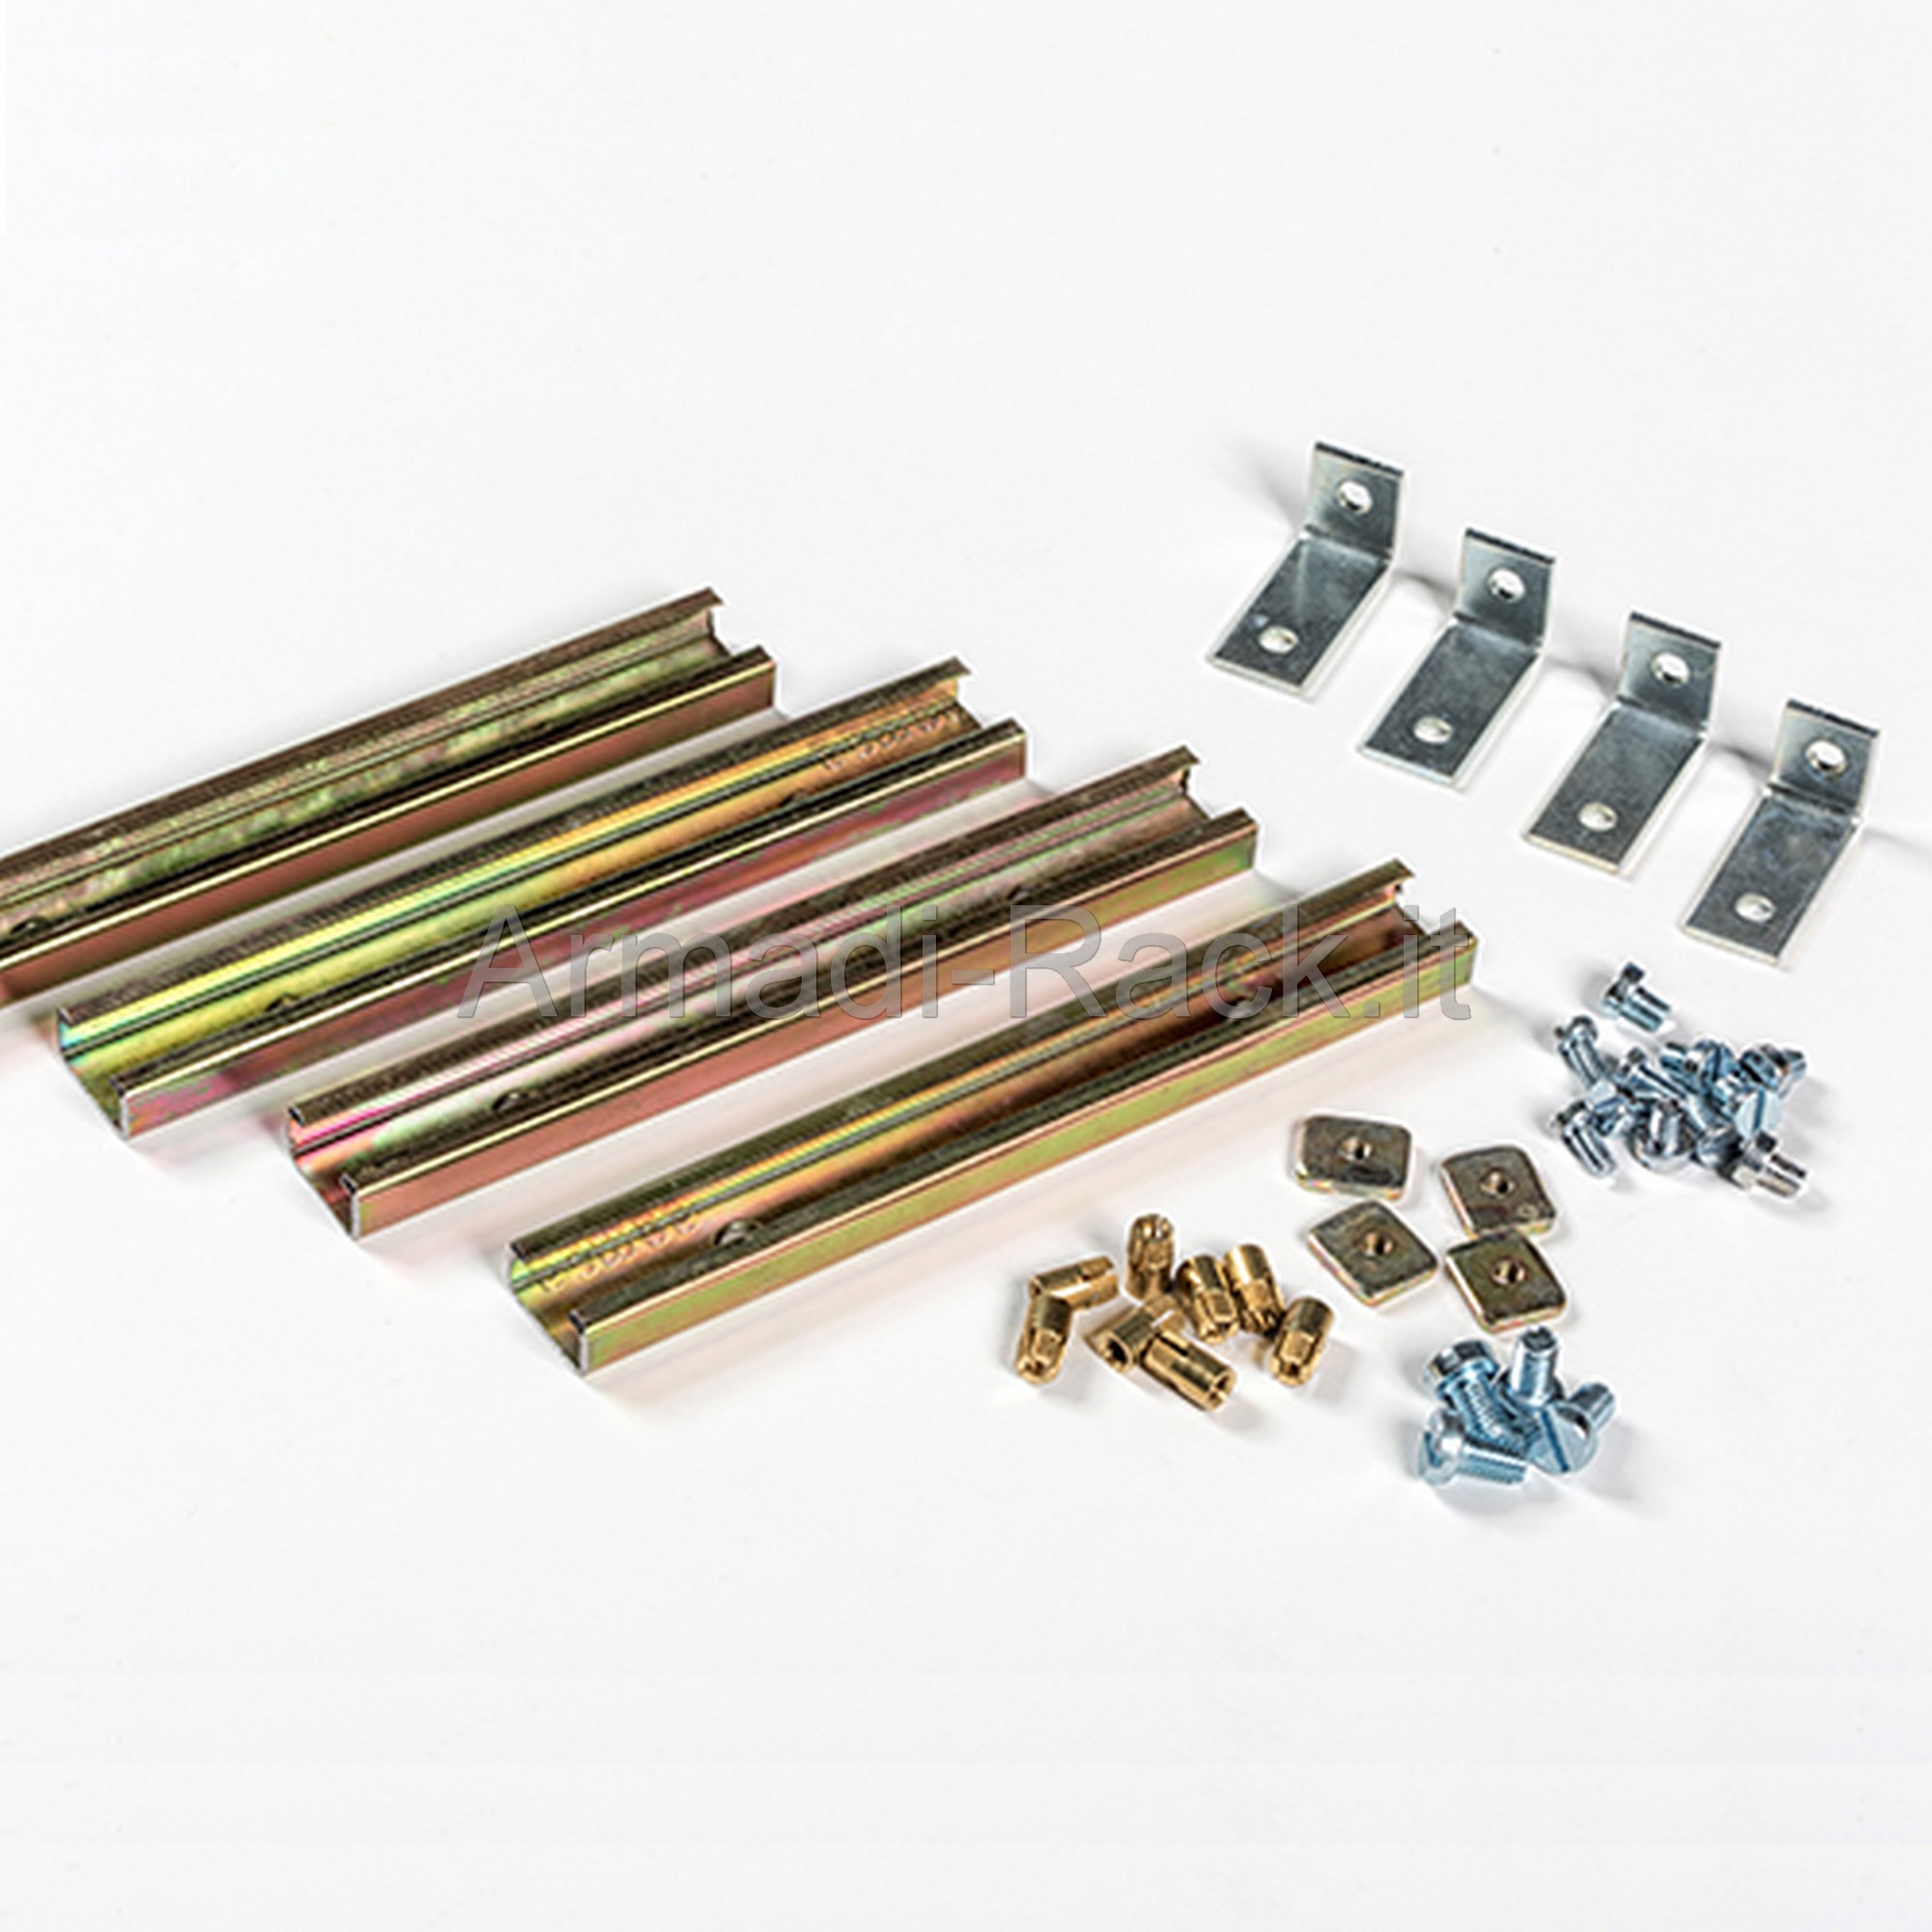 29220 - Kit regolazione piastra per armadietti serie GLASS profondi 230mm